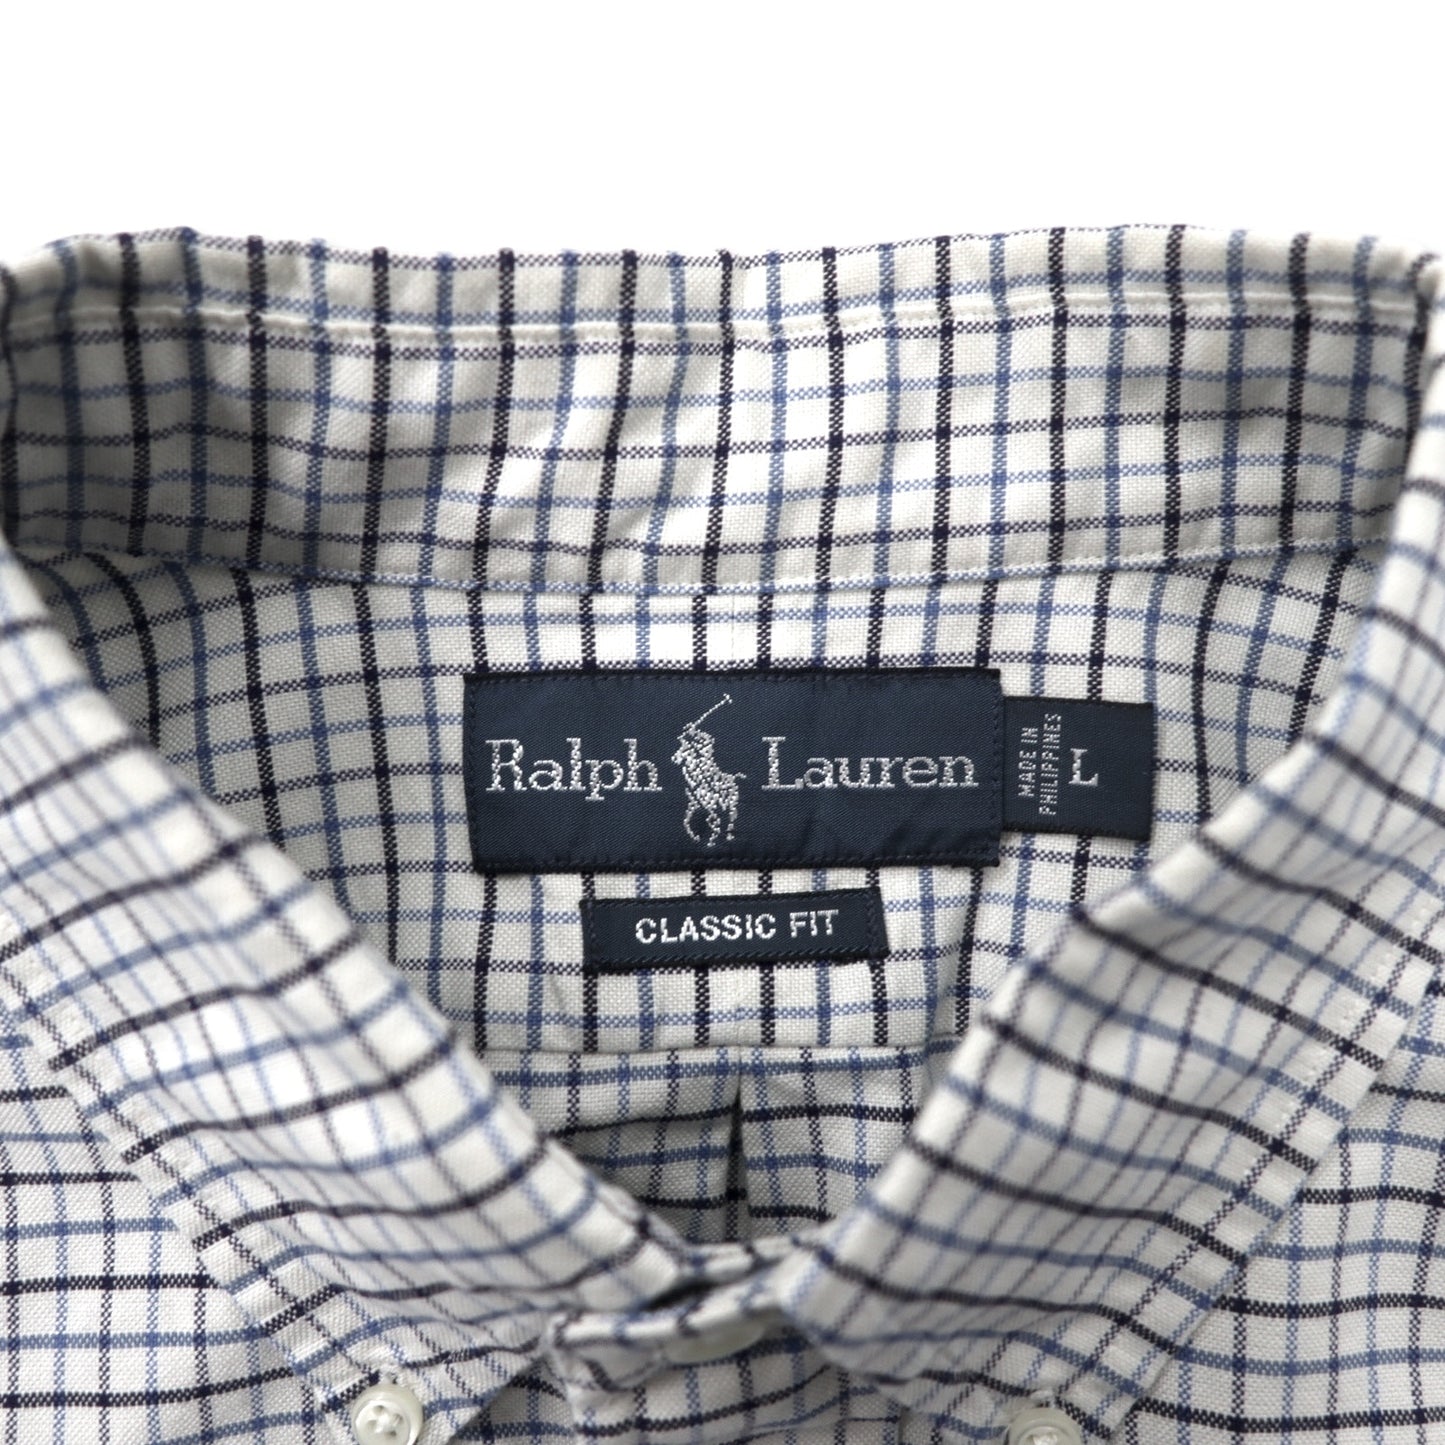 RALPH LAUREN ウィンドウペンチェック ボタンダウンシャツ L ホワイト ブルー コットン CLASSIC FIT スモールポニー刺繍